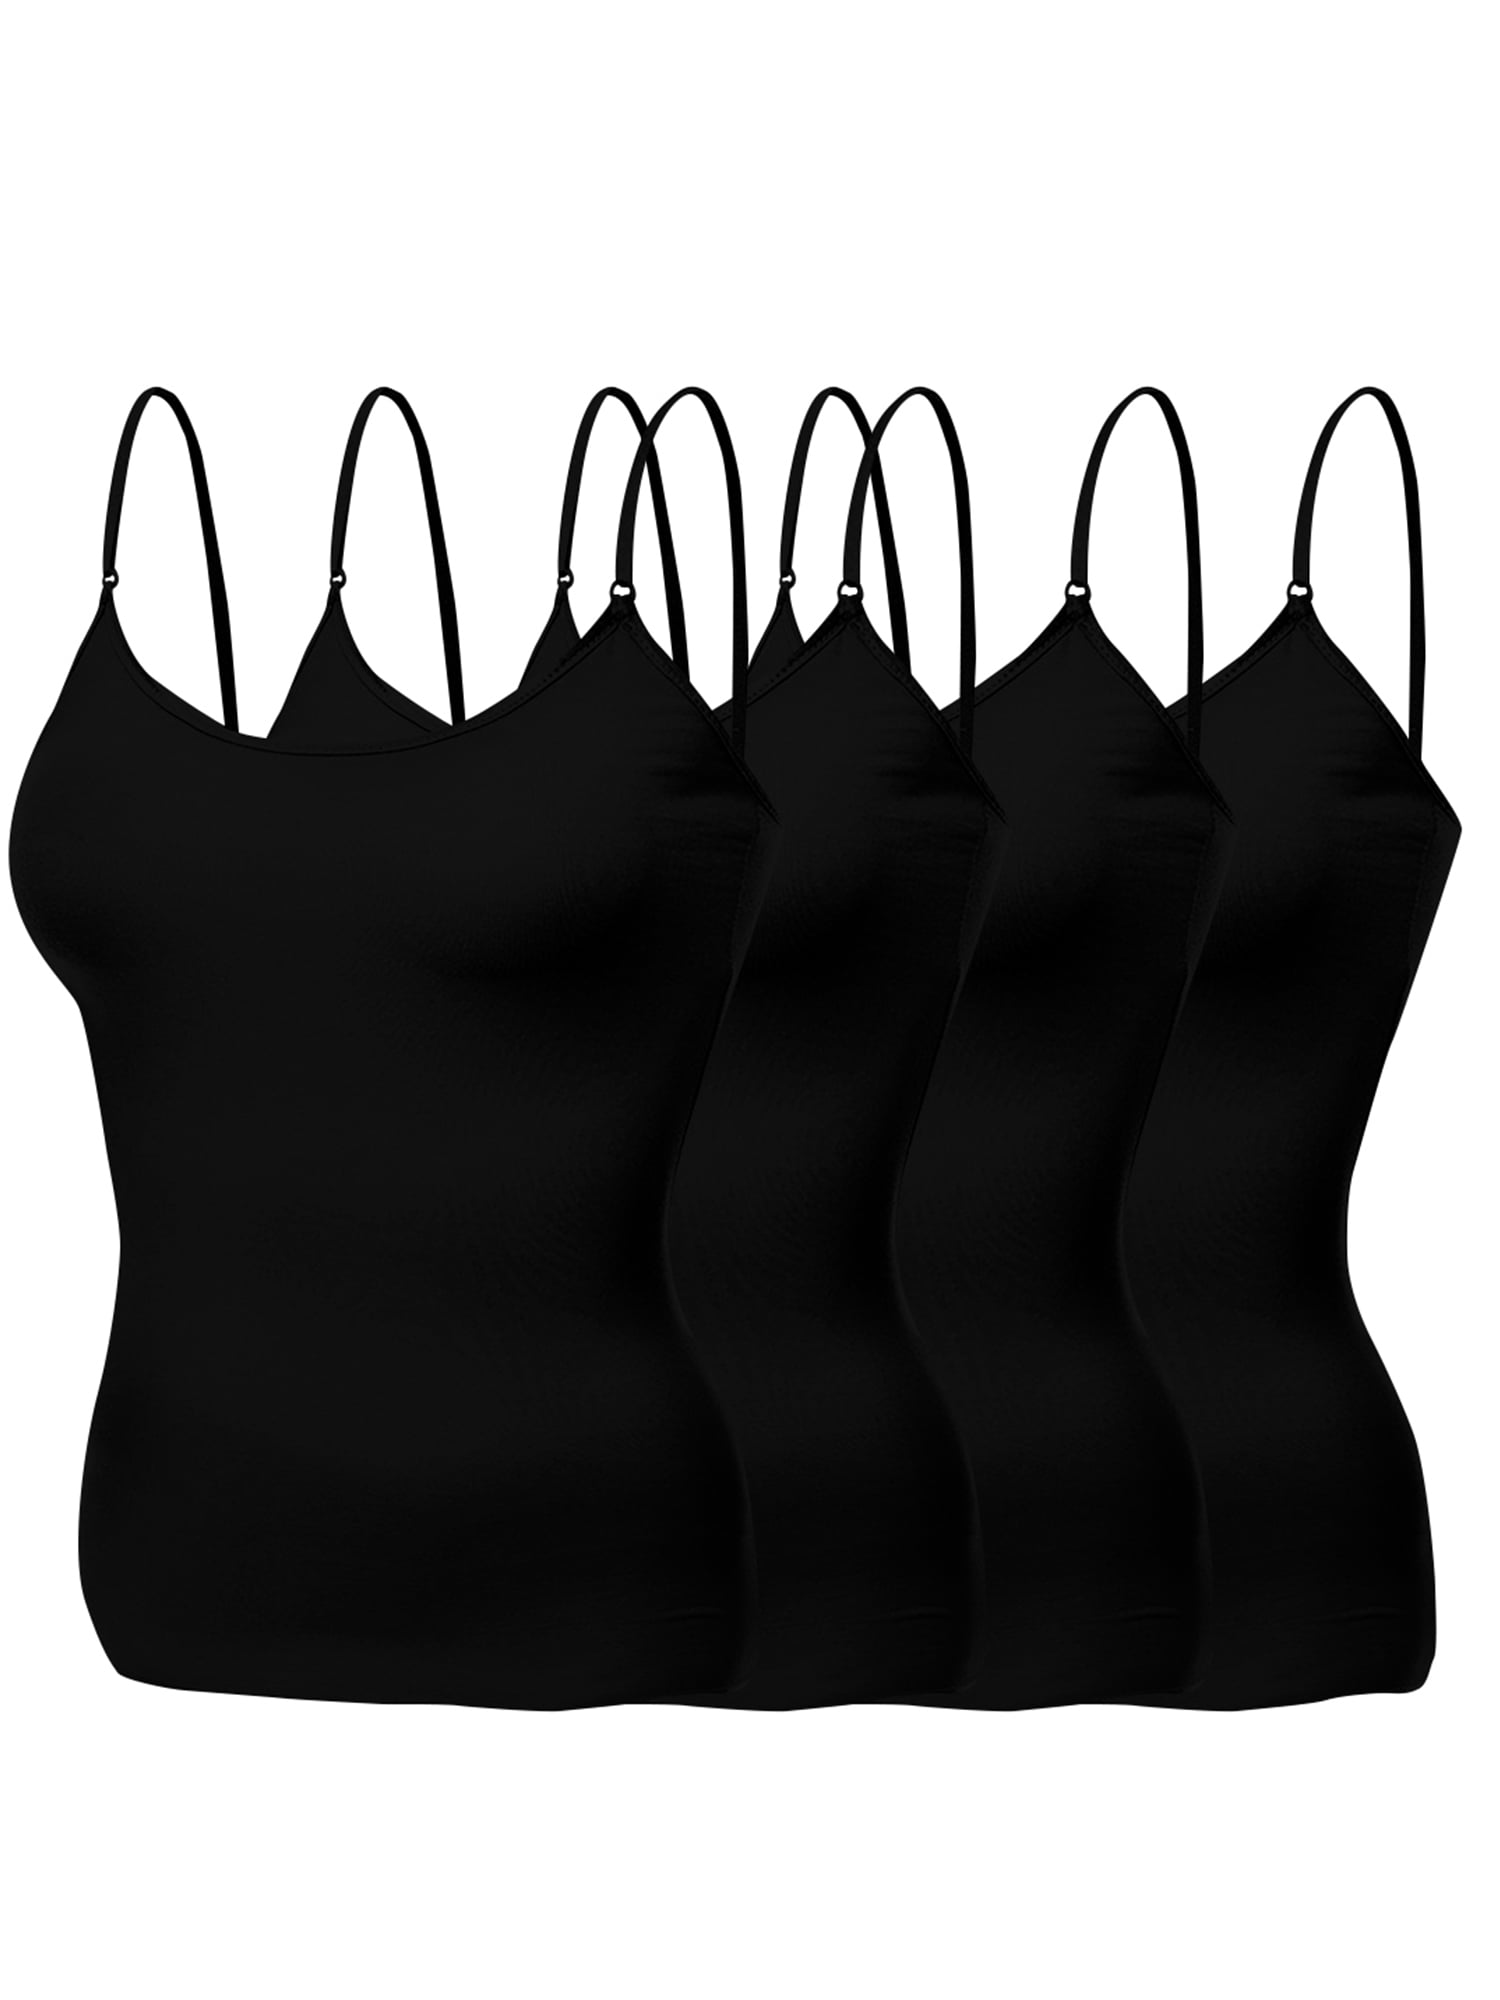 Emmalise Women's Basic Short Camisole Adjustable Strap Layering Cami ...